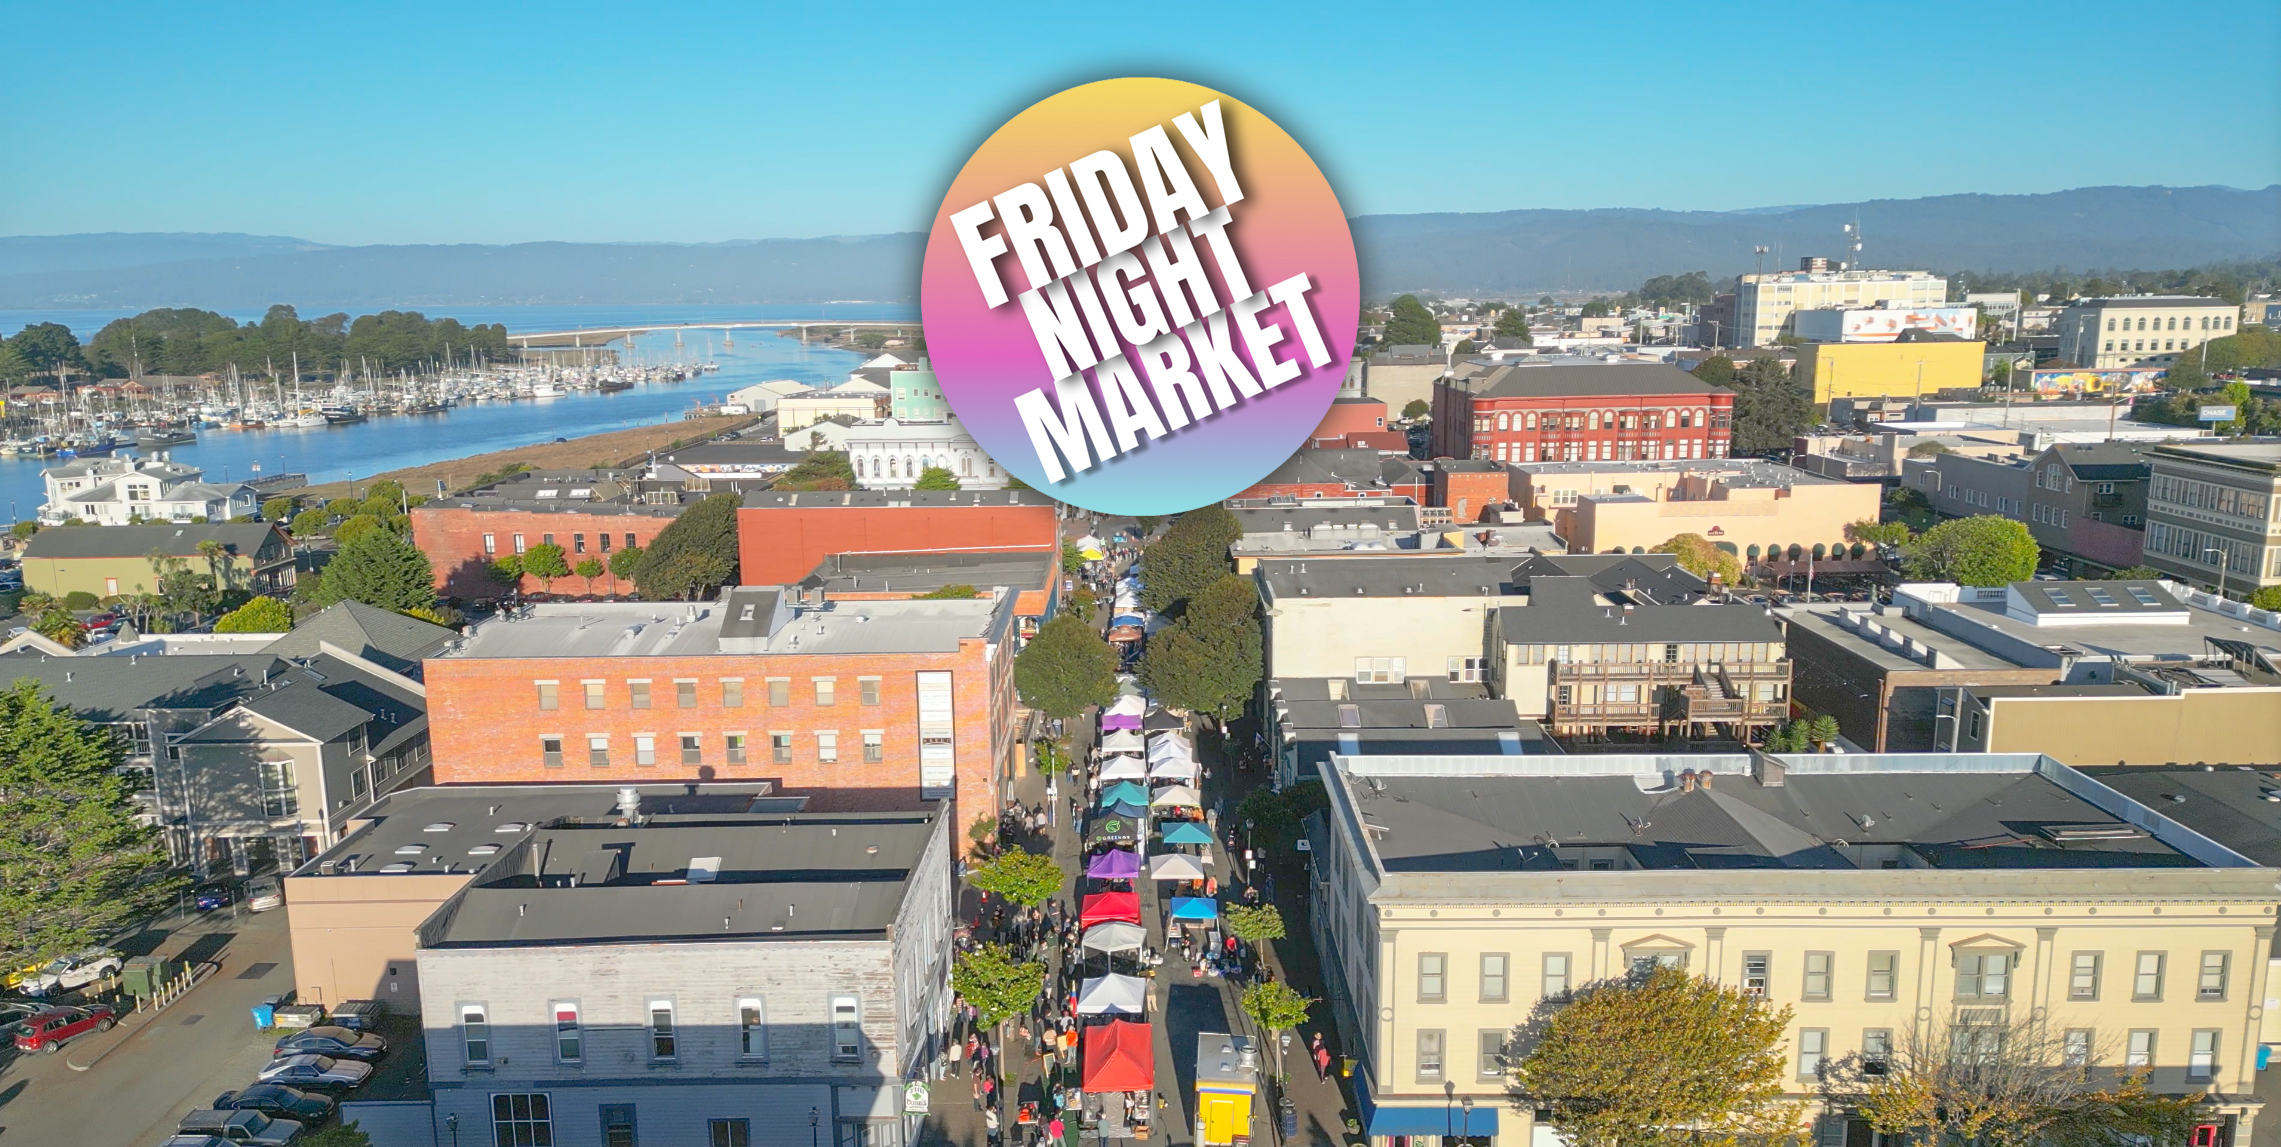 Eureka Friday Night Market cover image